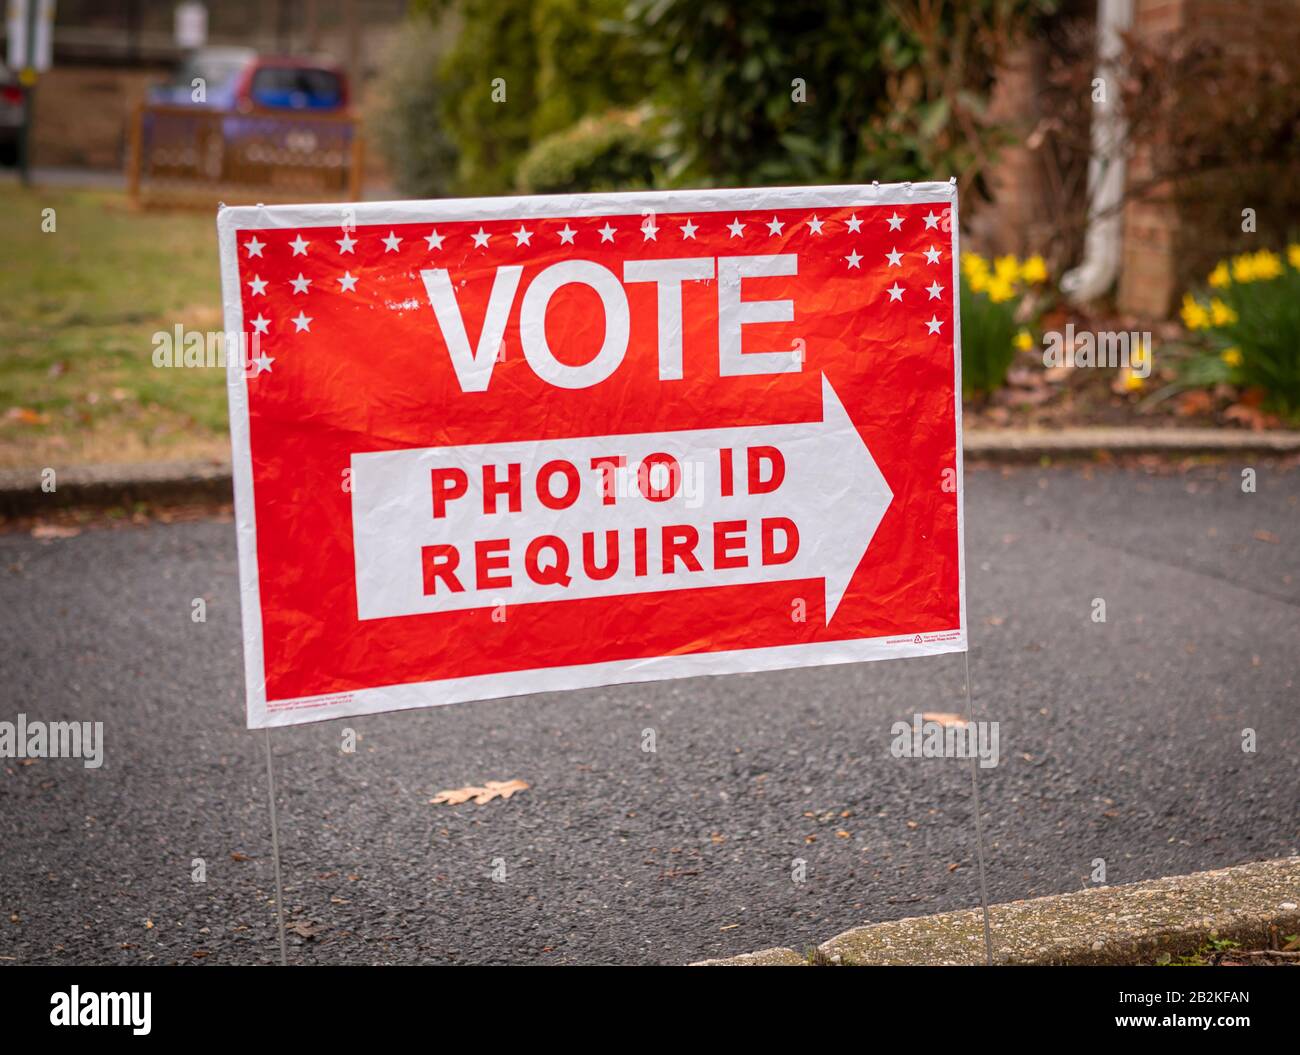 Arlington, VIRGINIA, USA - 3 MARZO 2020: Segnale di voto per le elezioni primarie democratiche, È Richiesto un documento di identità con foto. Foto Stock